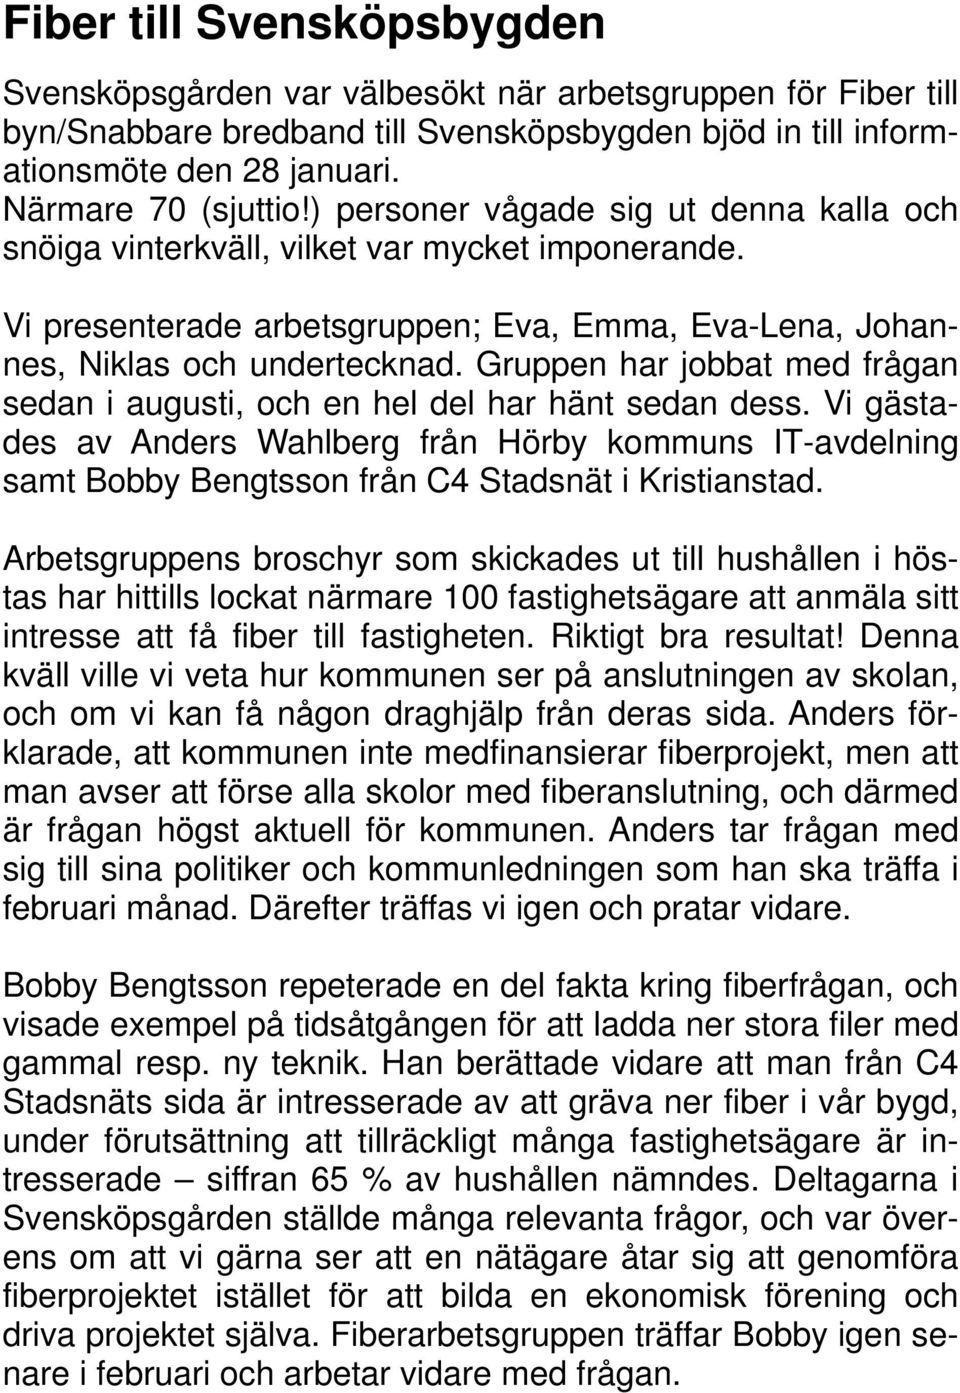 Gruppen har jobbat med frågan sedan i augusti, och en hel del har hänt sedan dess. Vi gästades av Anders Wahlberg från Hörby kommuns IT-avdelning samt Bobby Bengtsson från C4 Stadsnät i Kristianstad.